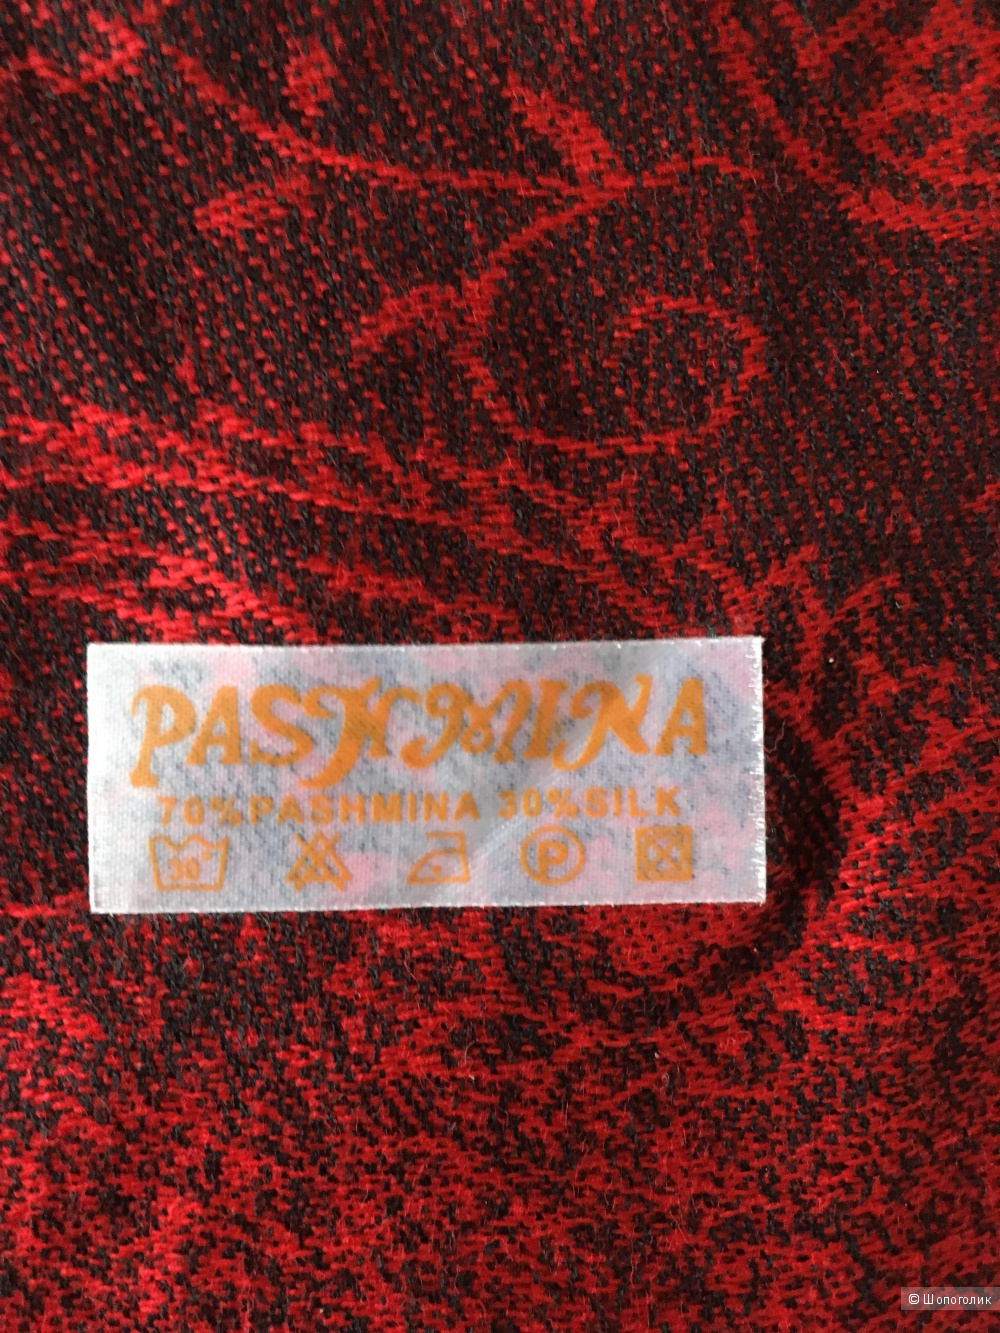 Палантин Pashmina, 70x180 см.